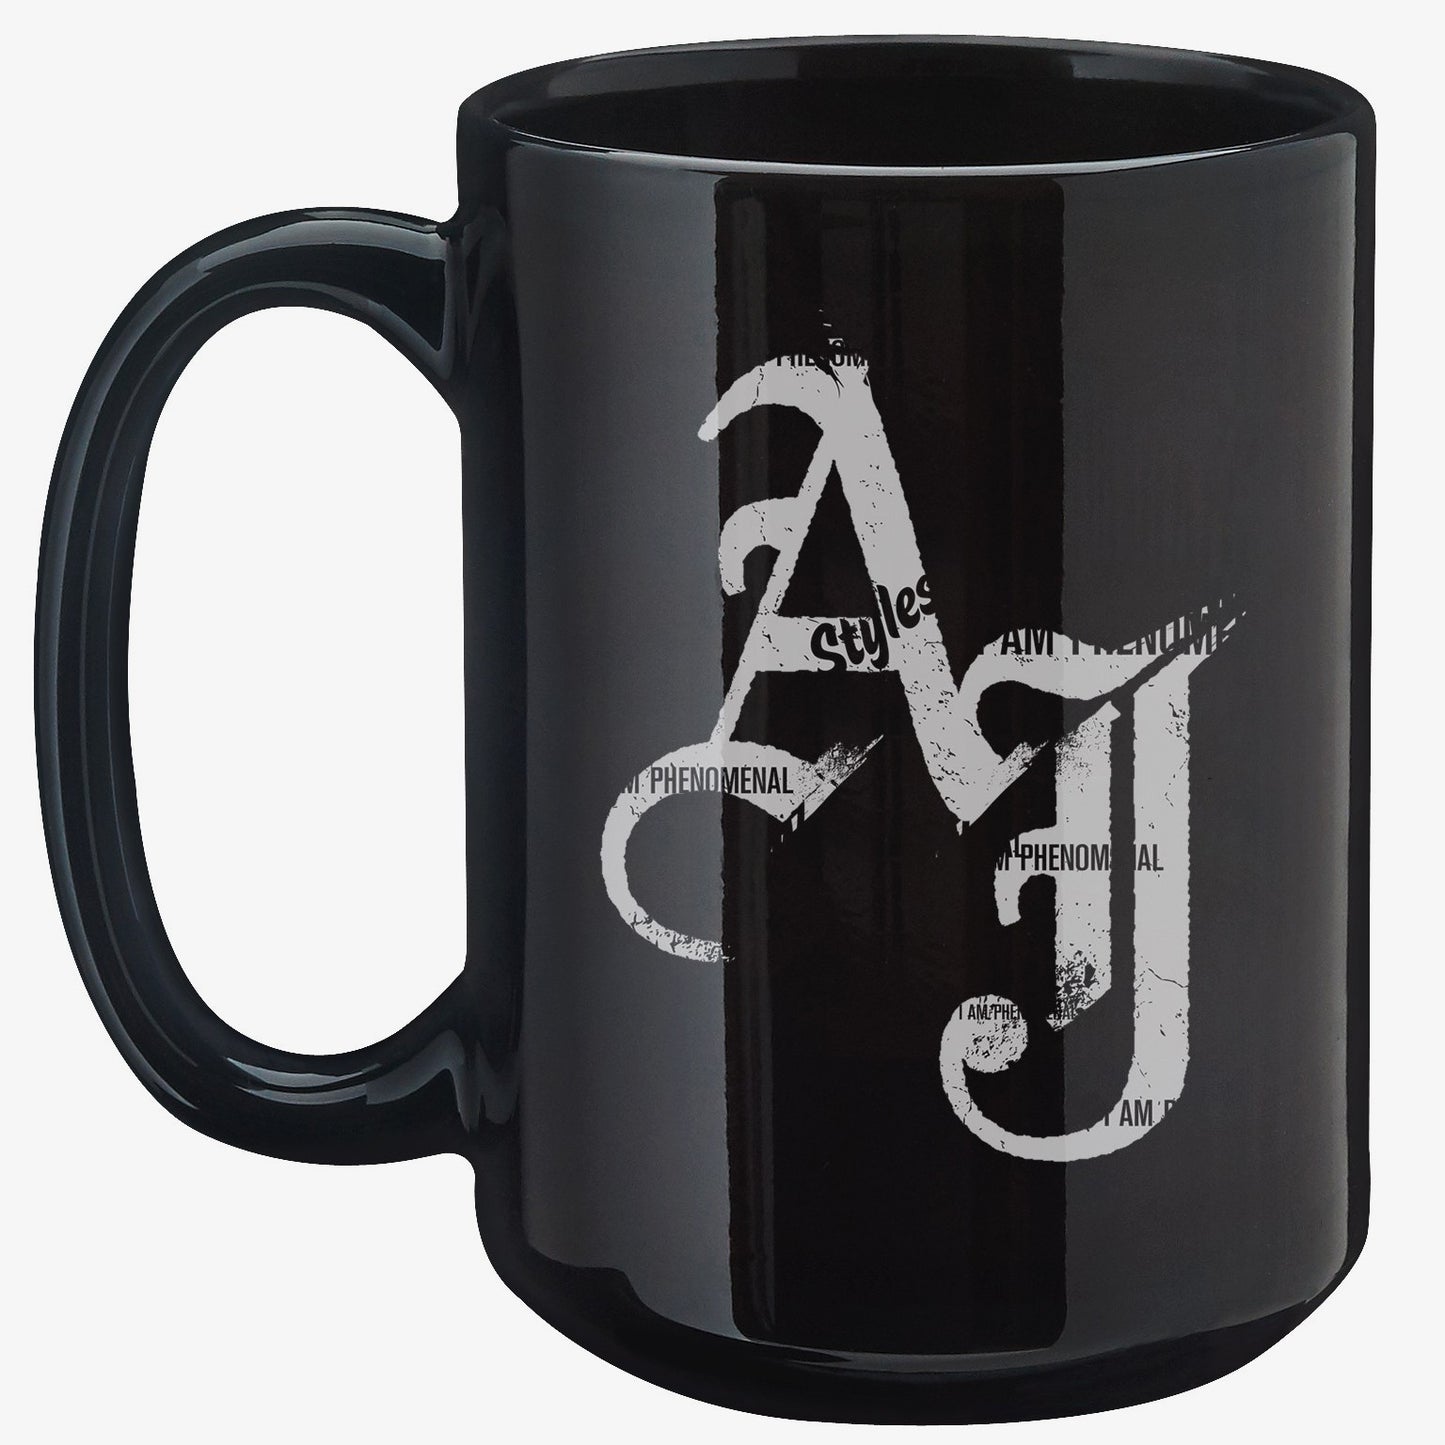 AJ Styles "P1" 15 oz. WWE Mug